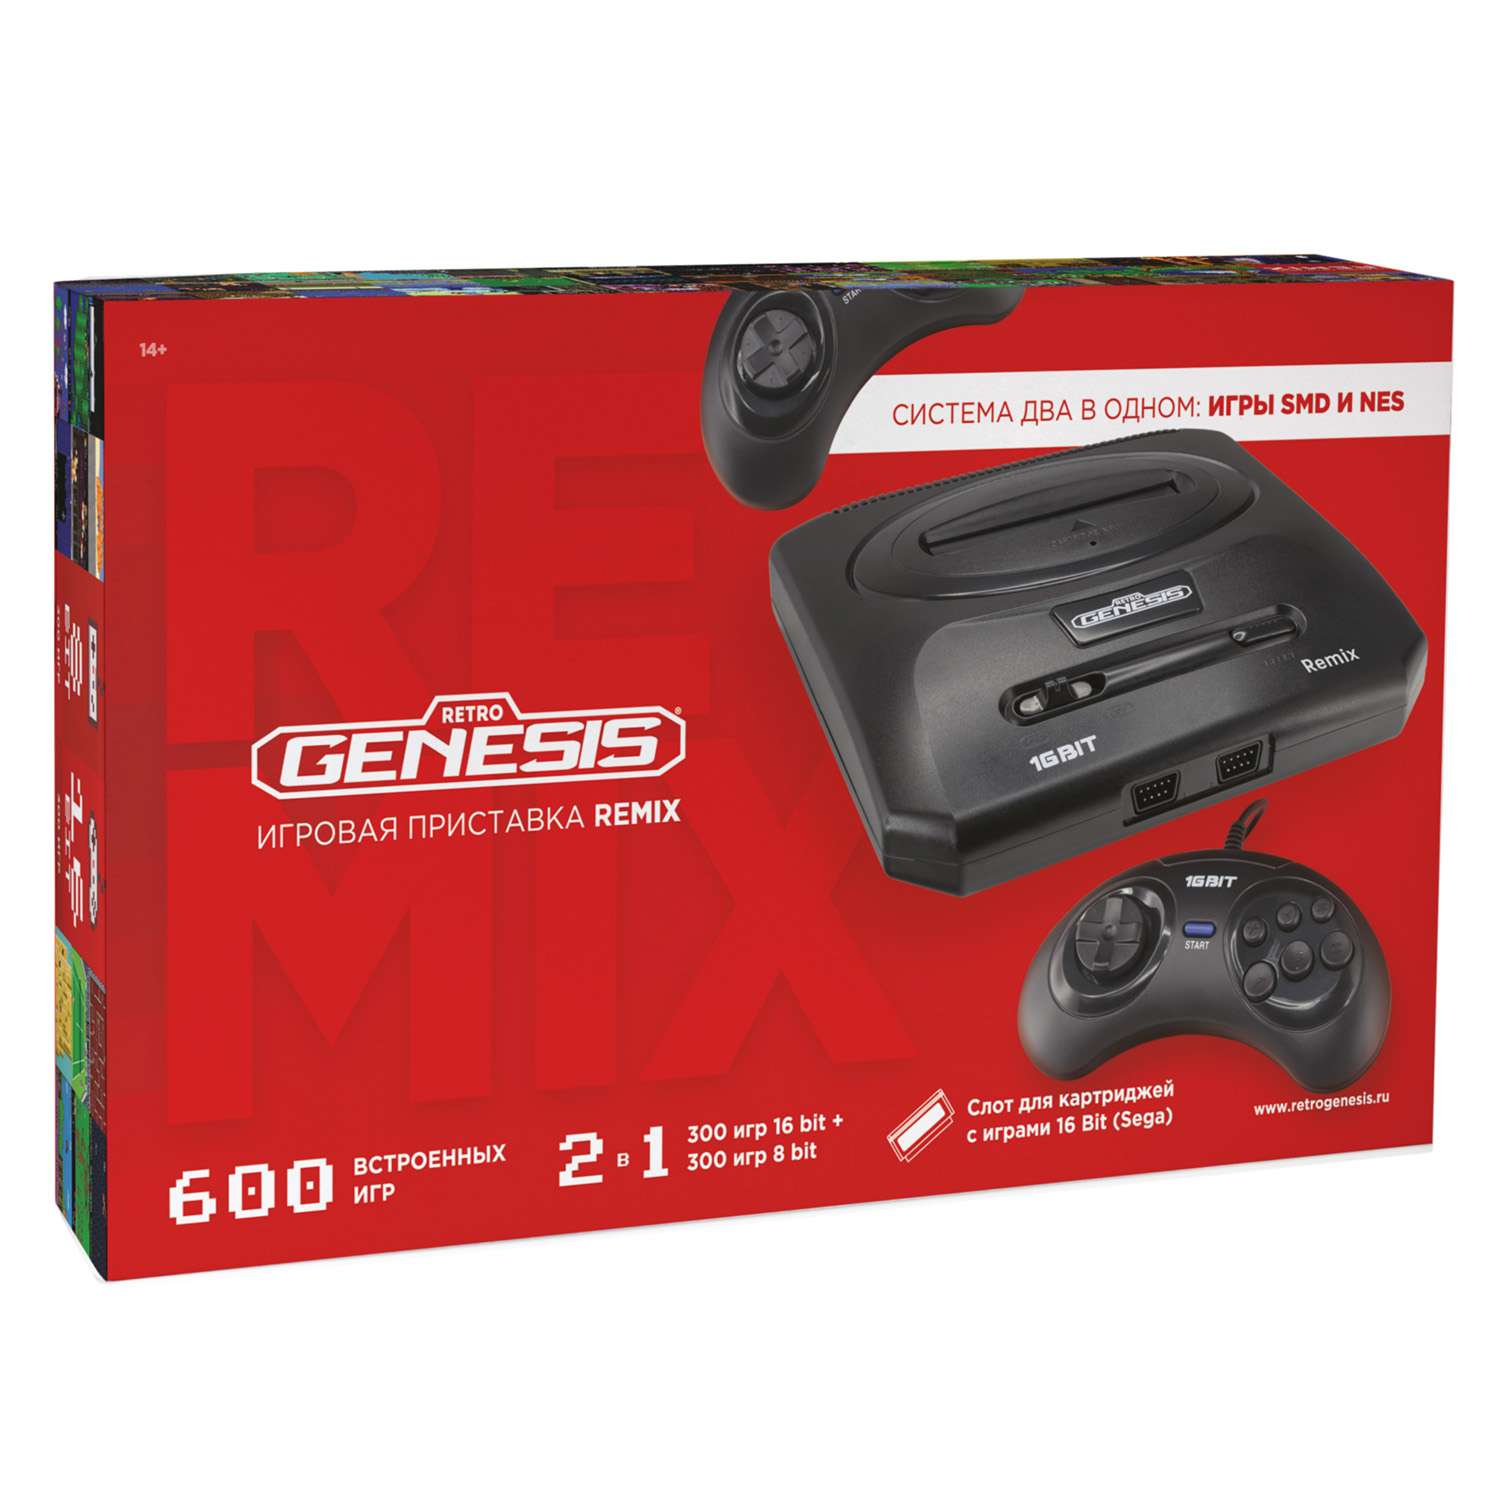 Игровая приставка для детей Retro Genesis Remix 8+16Bit + 600 игр AV 2 проводных джойстика - фото 2